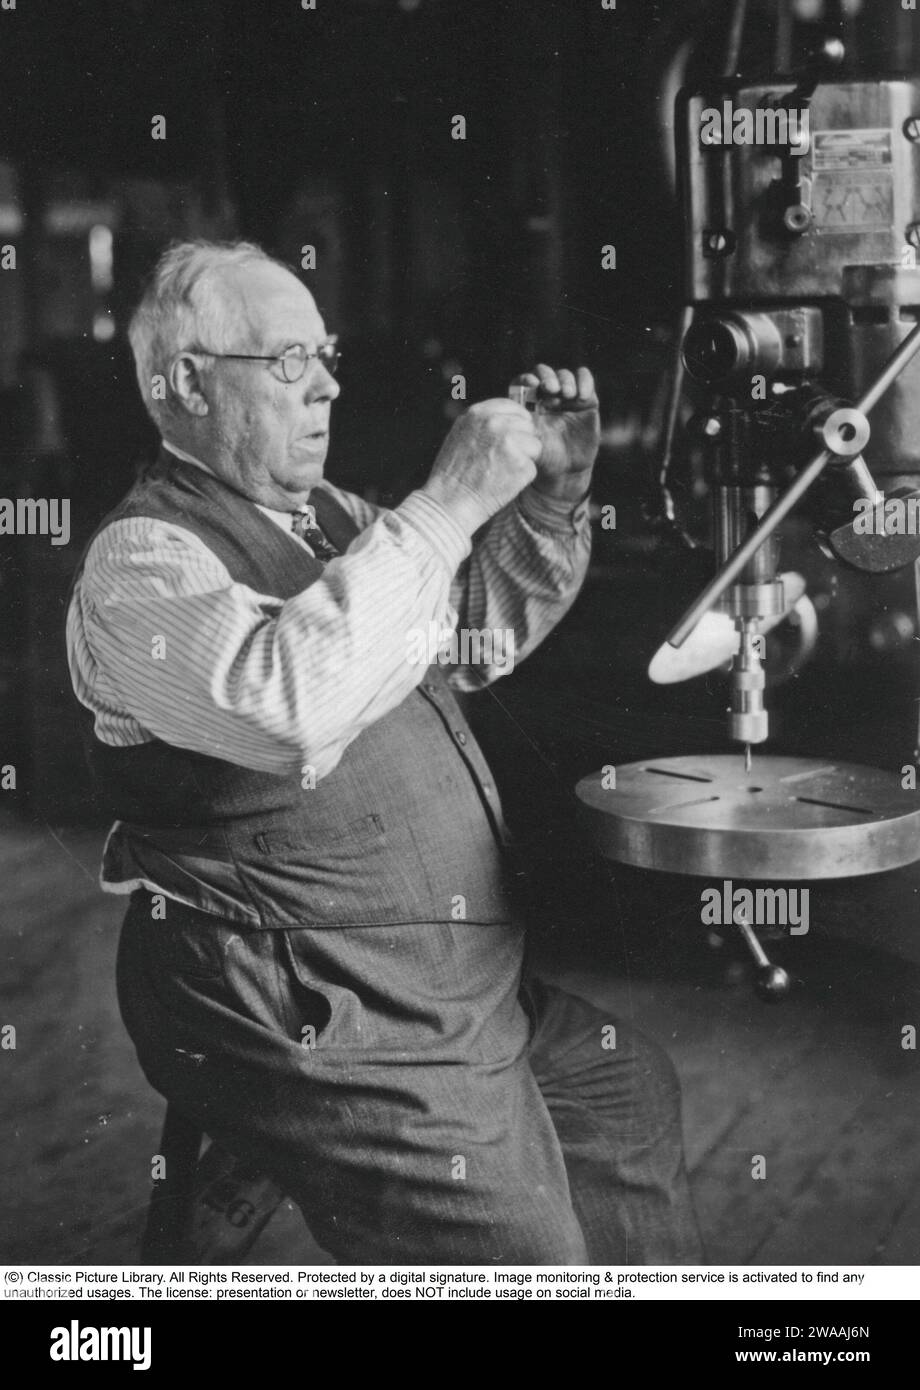 Johan Petter Johansson. Nato nel dicembre del 12 1853, morto nell'agosto del 25 1943. Era un inventore svedese ed è il padre della chiave regolabile moderna che ha patenato 1891 e 1892. Ha ottenuto oltre 100 brevetti in totale. Inventò anche la chiave per idraulico che si vede nelle sue mani. Oltre 100 milioni di chiavi prodotte fino ad oggi. Foto Stock